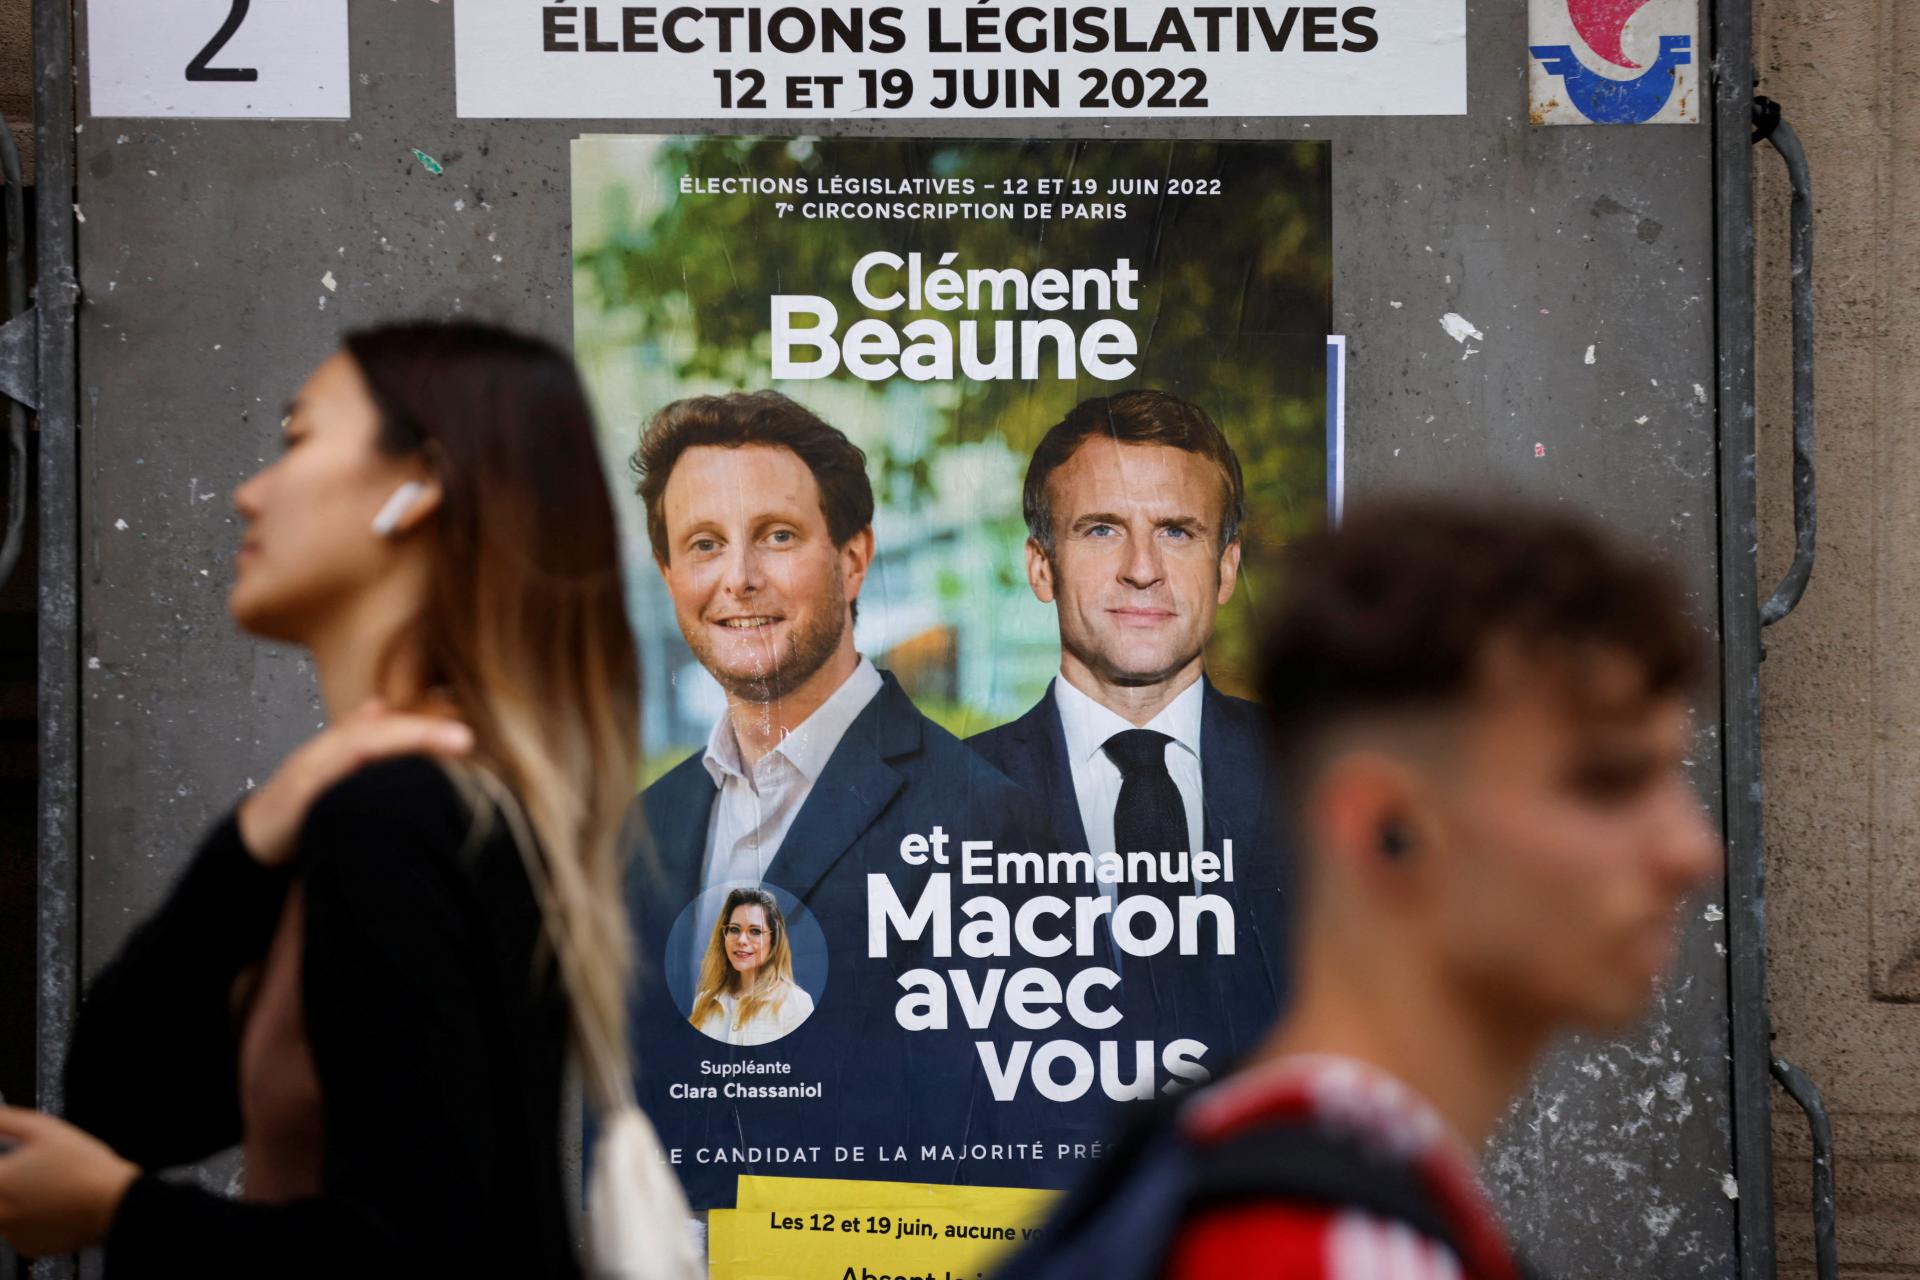 La France élira un parlement.  Le président Macron se bat pour le pouvoir de son influence